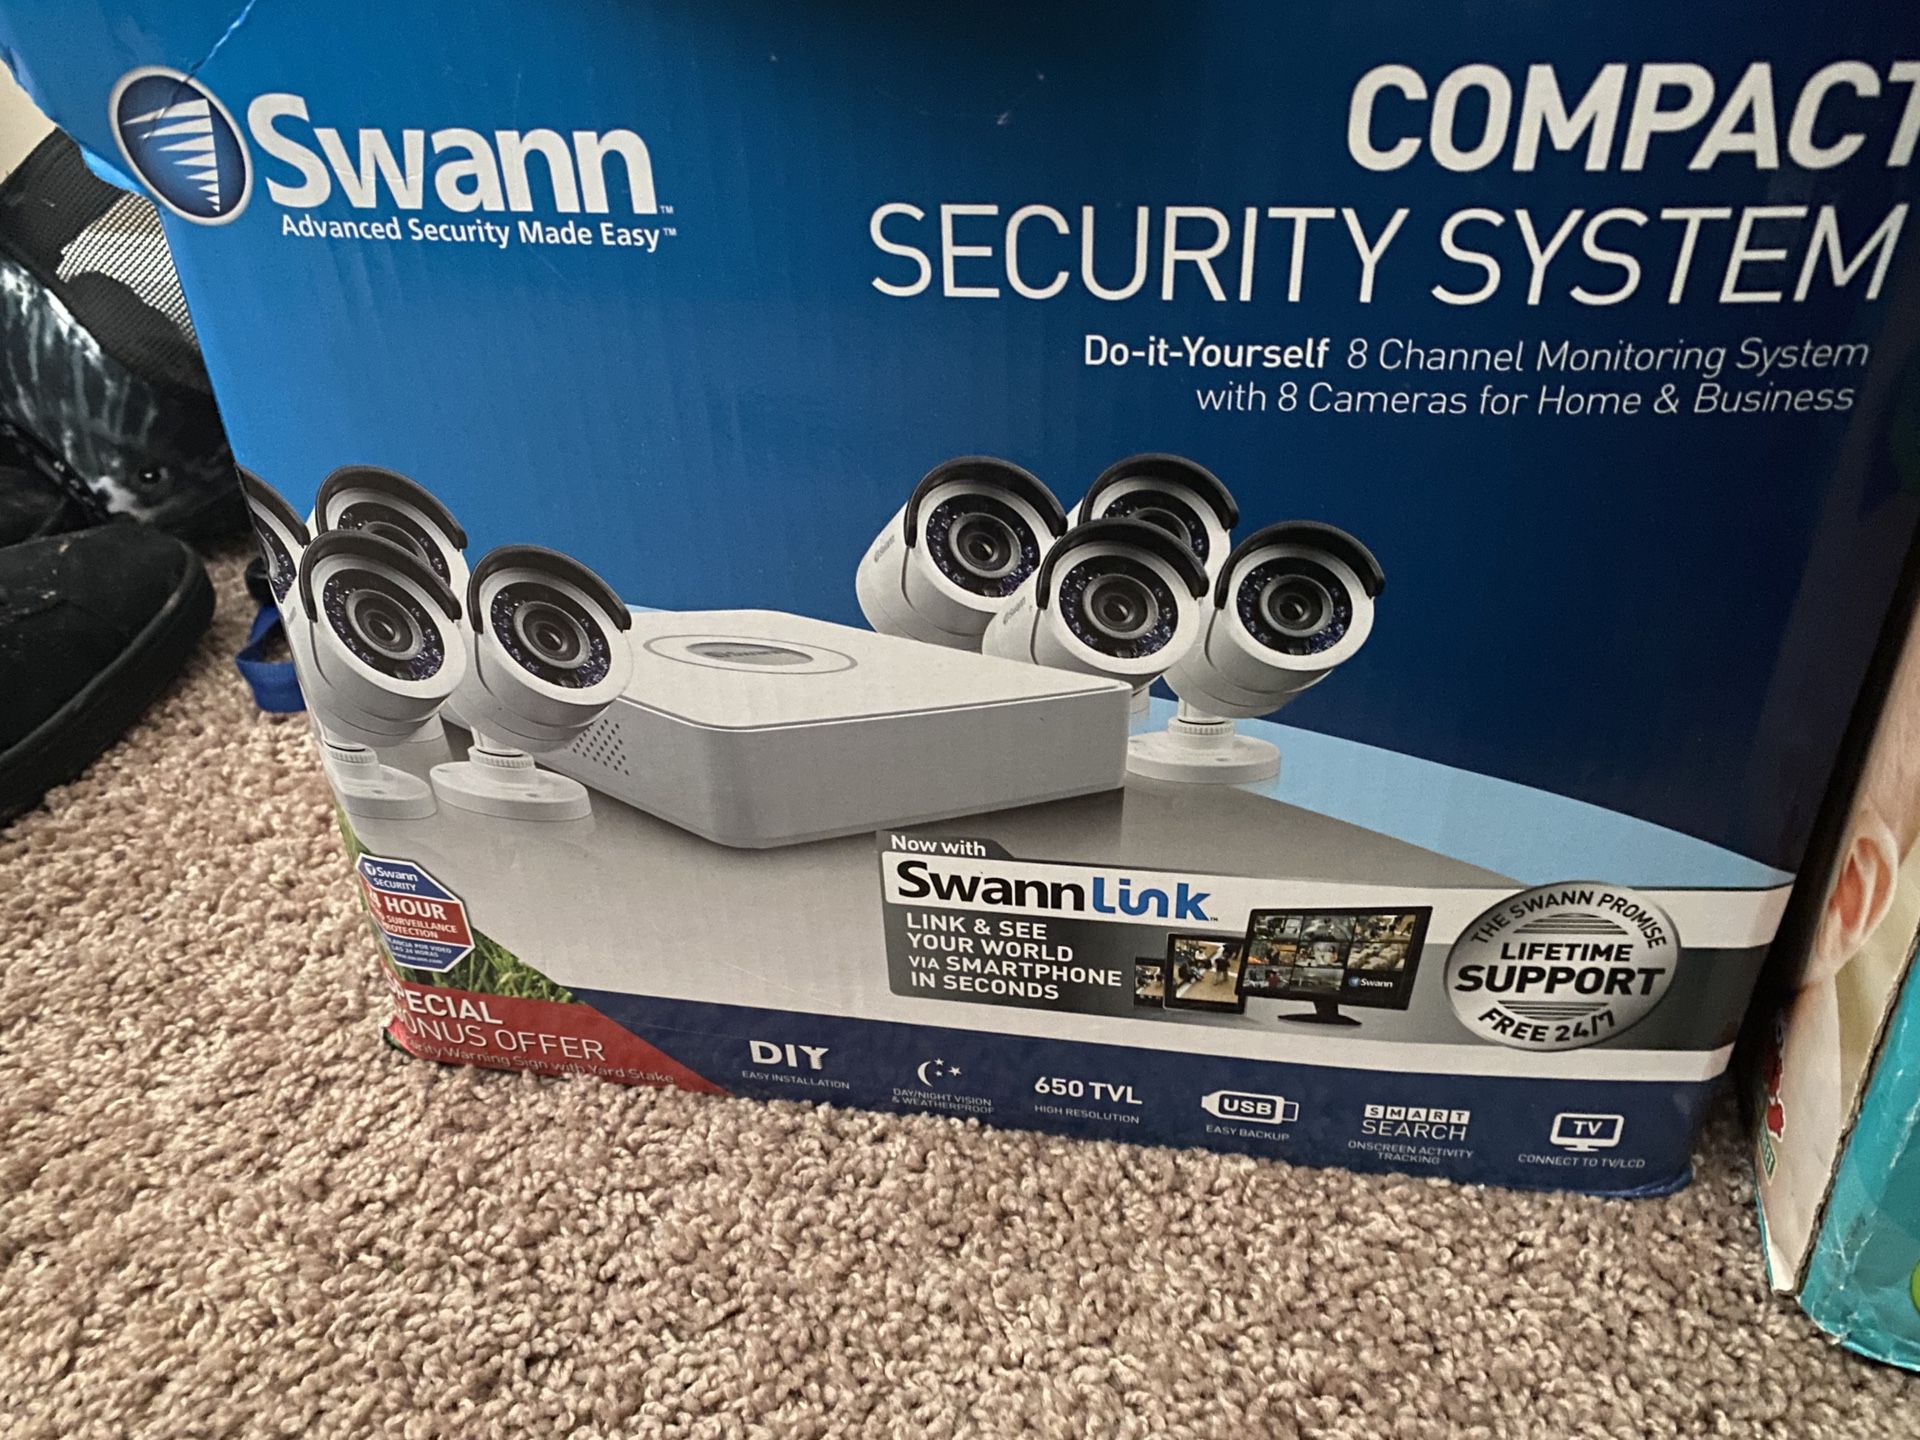 Brand new security cameras